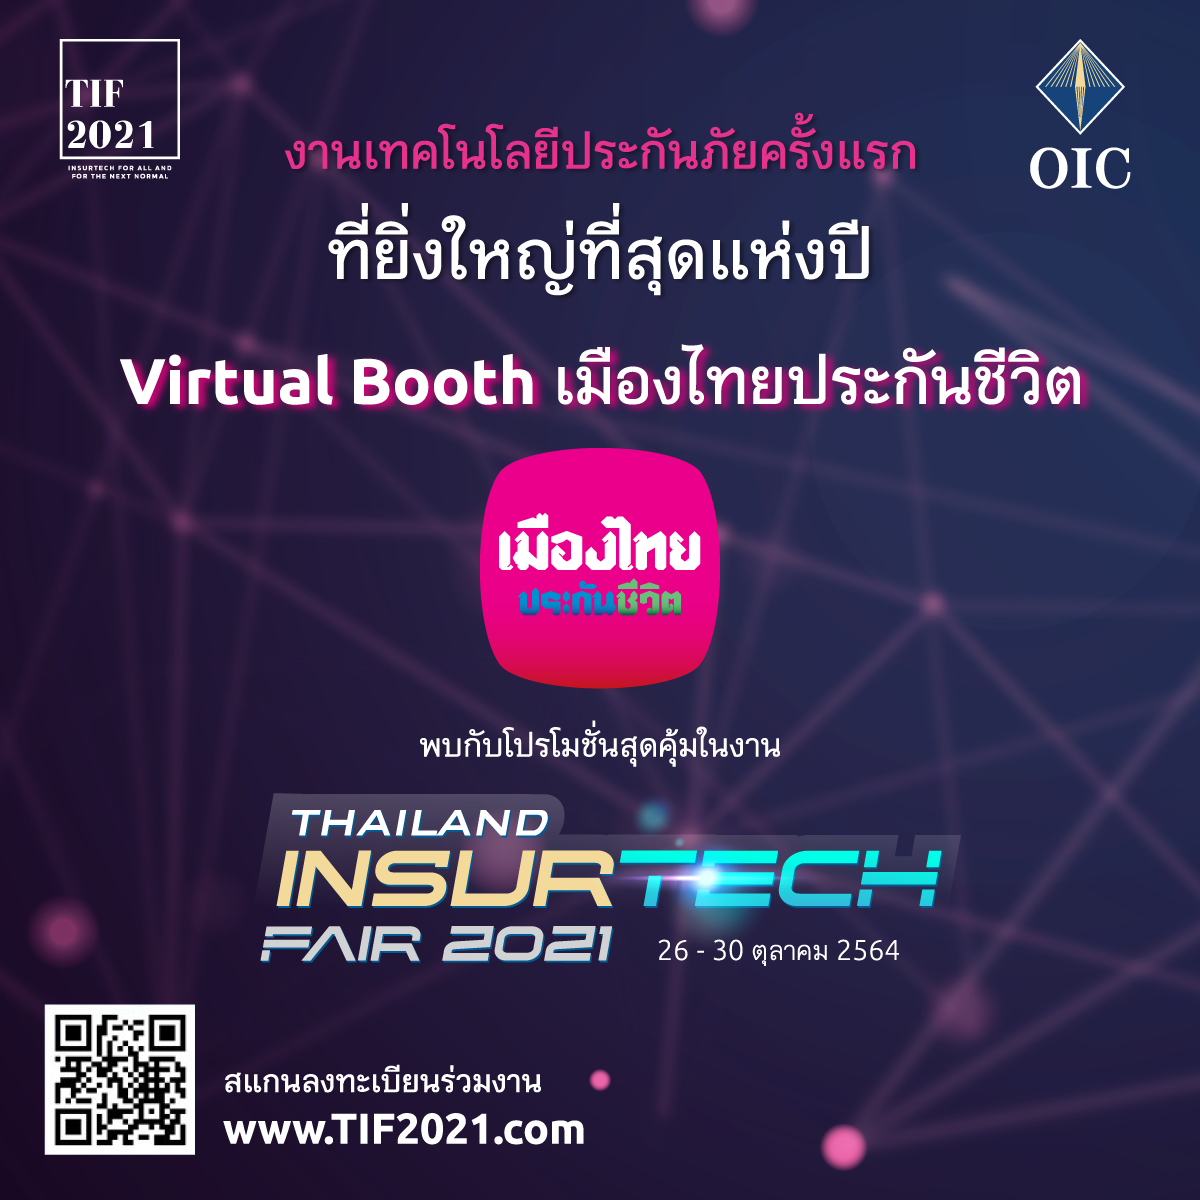 เมืองไทยประกันชีวิต ขนผลิตภัณฑ์-โปรโมชั่นเด่น ร่วมงาน Thailand InsurTech Fair 2021 ในรูปแบบ Virtual ครั้งแรกของไทย